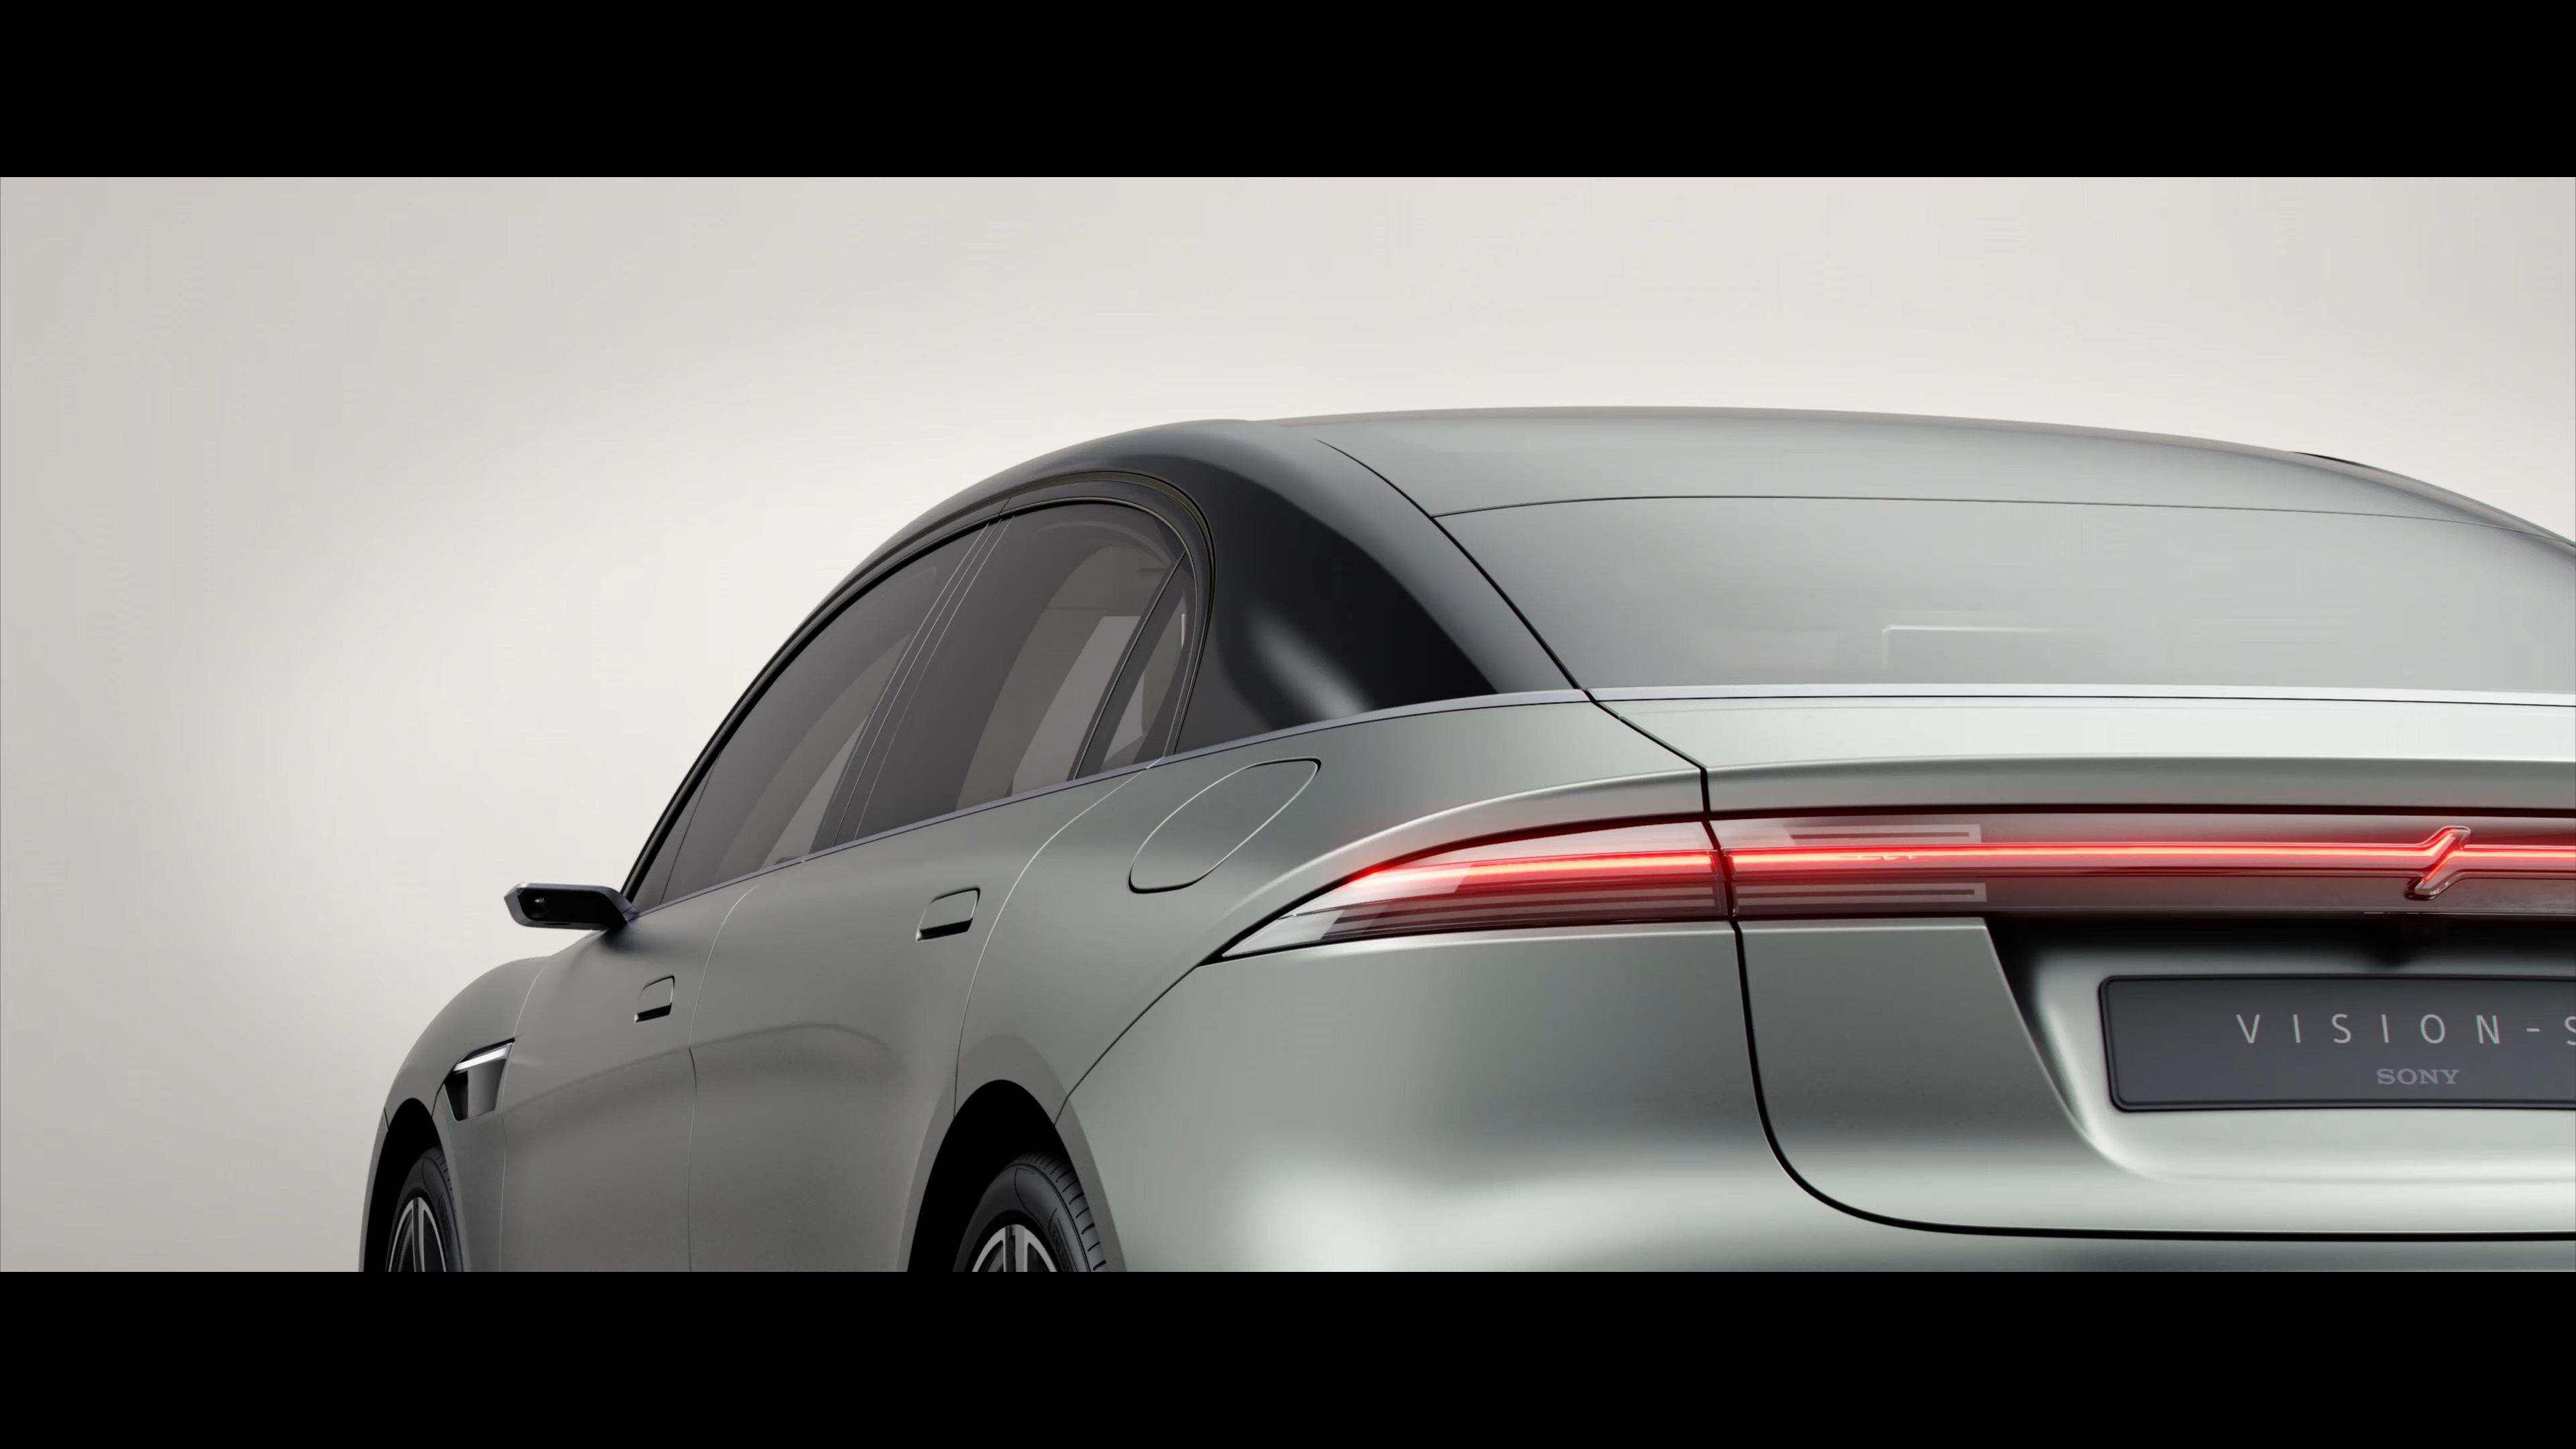 索尼计划2020财年测试自动驾驶汽车 但无自产汽车计划